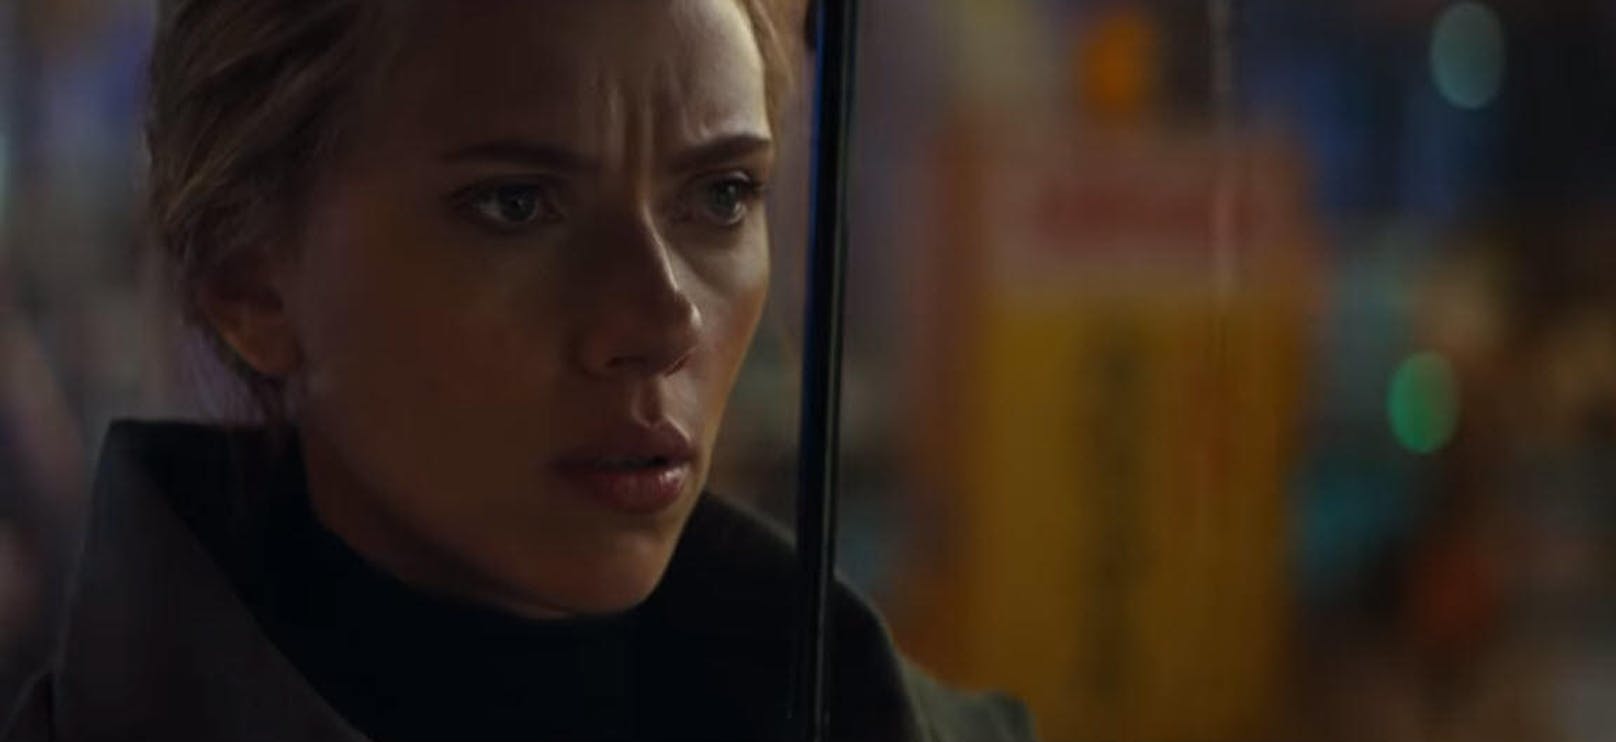 ... Natasha Romanoff alias Black Widow (Scarlett Johansson) ihn in Japan aufstöbert. Im Trailer passiert das in genau dem Moment, in dem ...